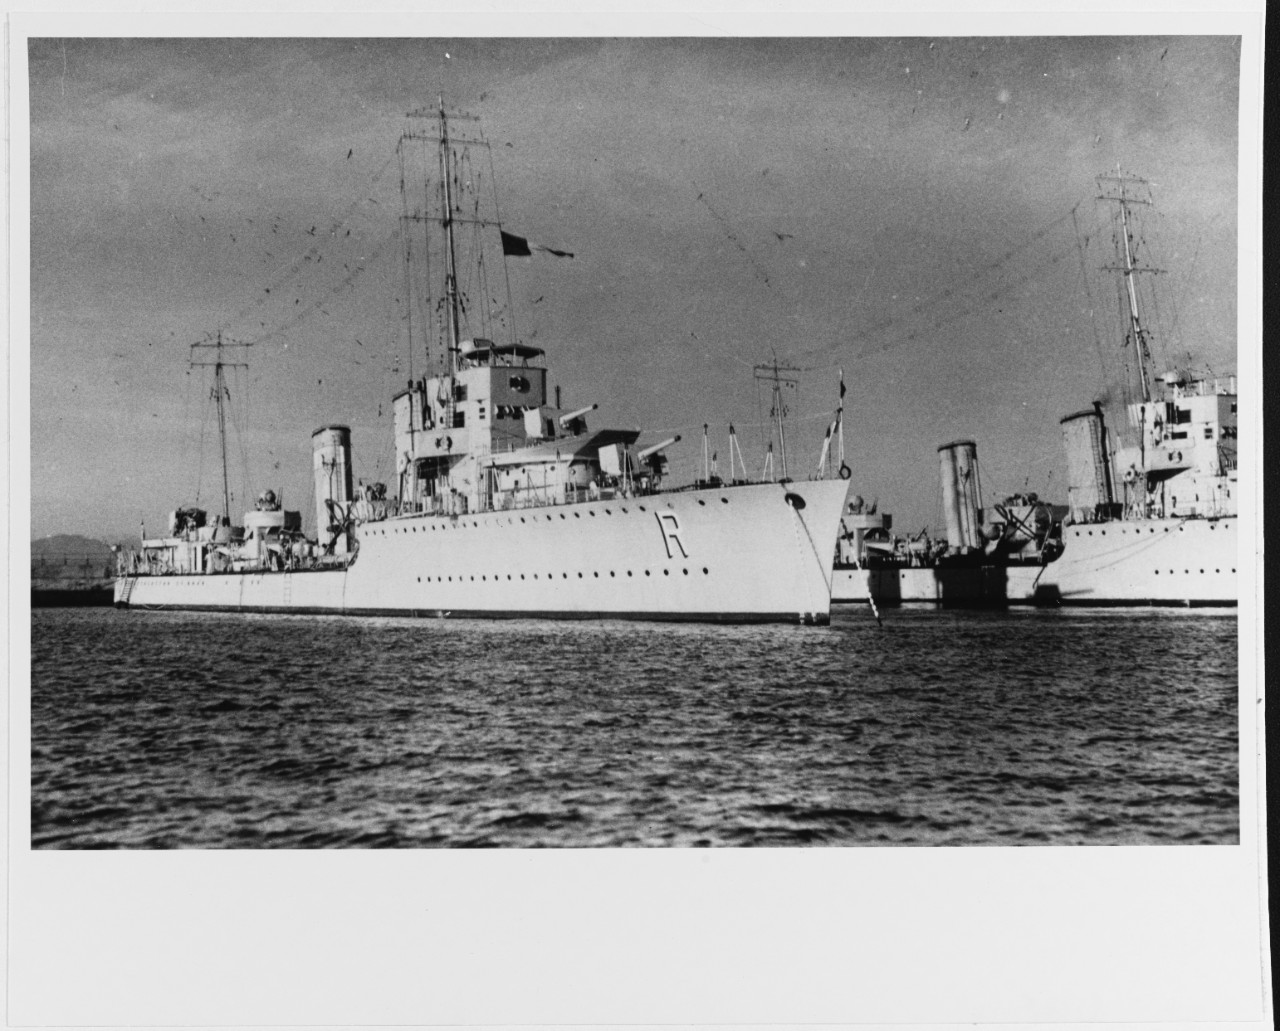 RIQUELME (Chilean destroyer, 1928)